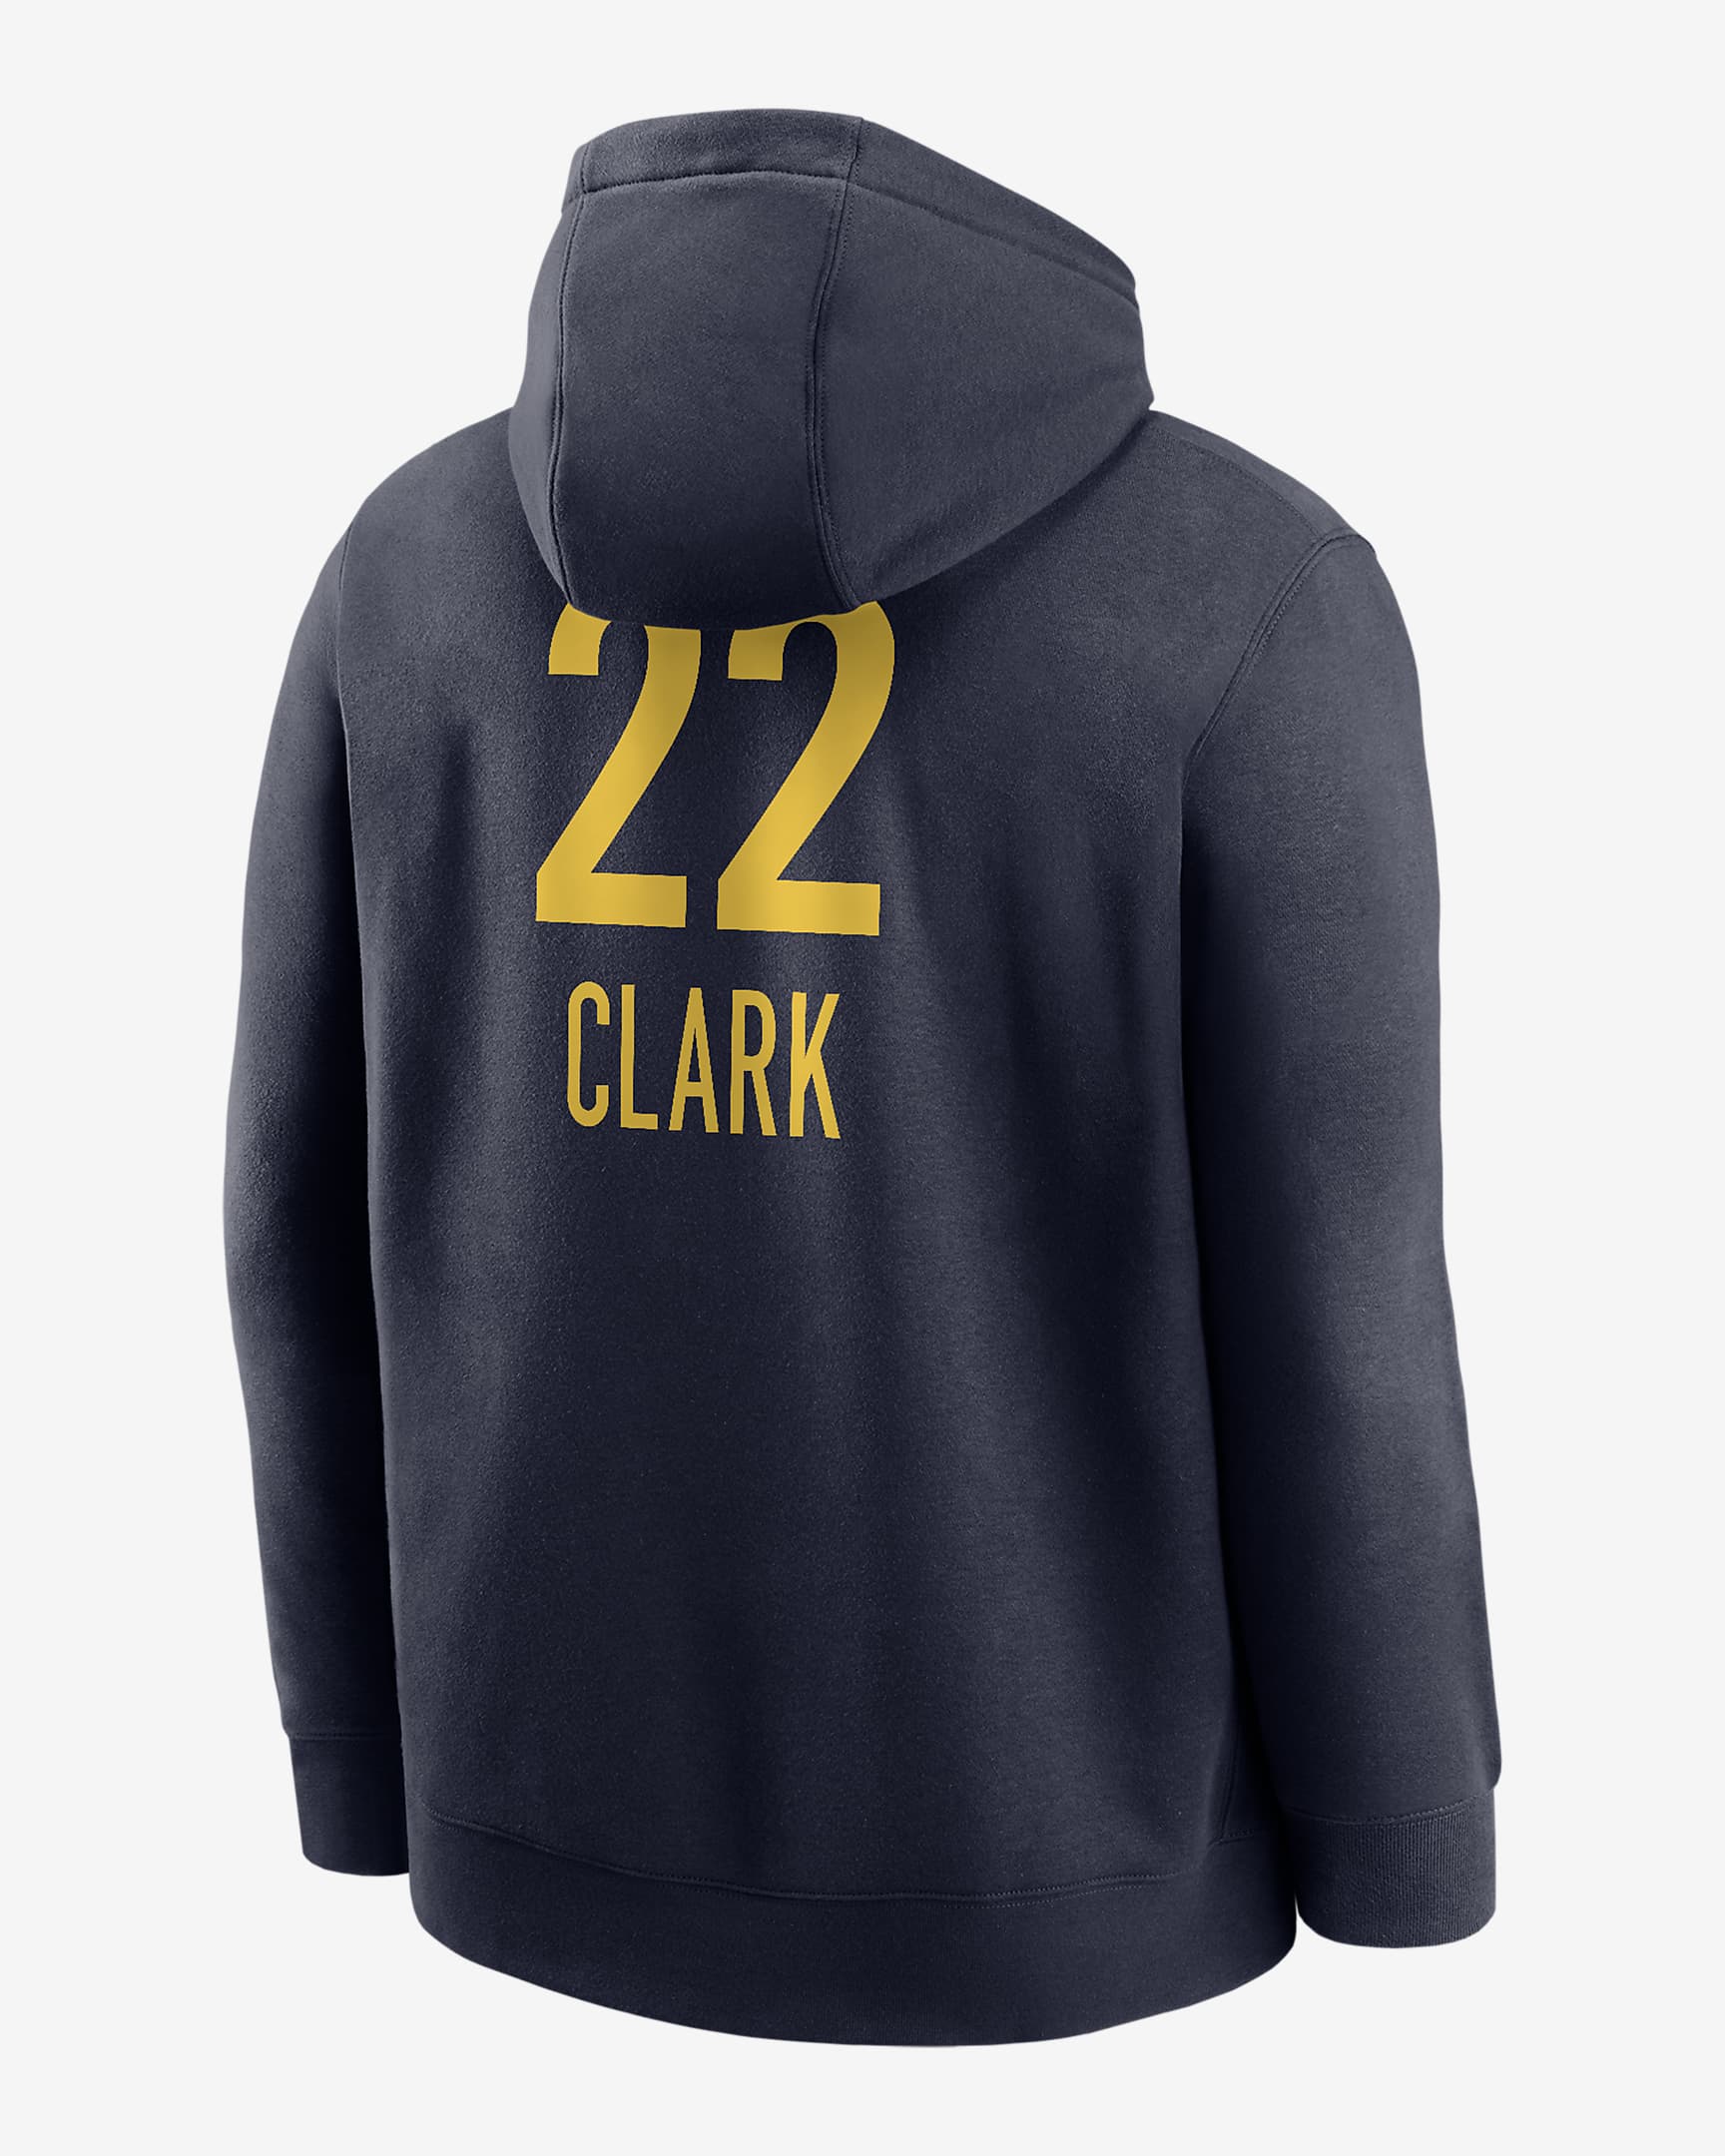 Sudadera con gorro sin cierre Nike de la WNBA para hombre Caitlin Clark ...